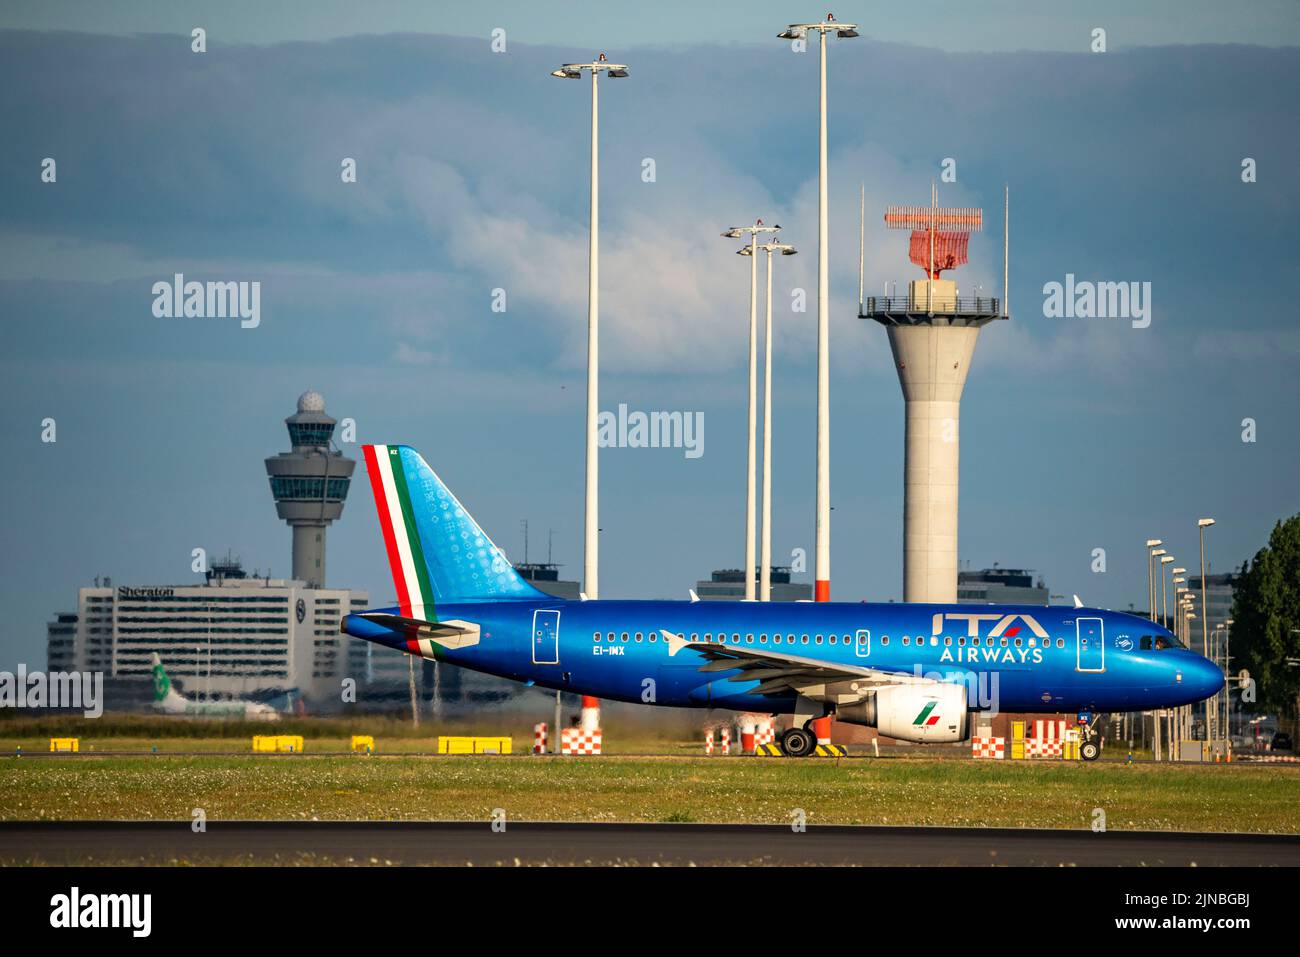 Amsterdam Shiphol Airport, Polderbaan, eine von 6 Start- und Landebahnen, Flugsicherungsturm, auf dem Rollweg zum Start, Ei-IMX, ITA Airways Airbus A319-100. Stockfoto